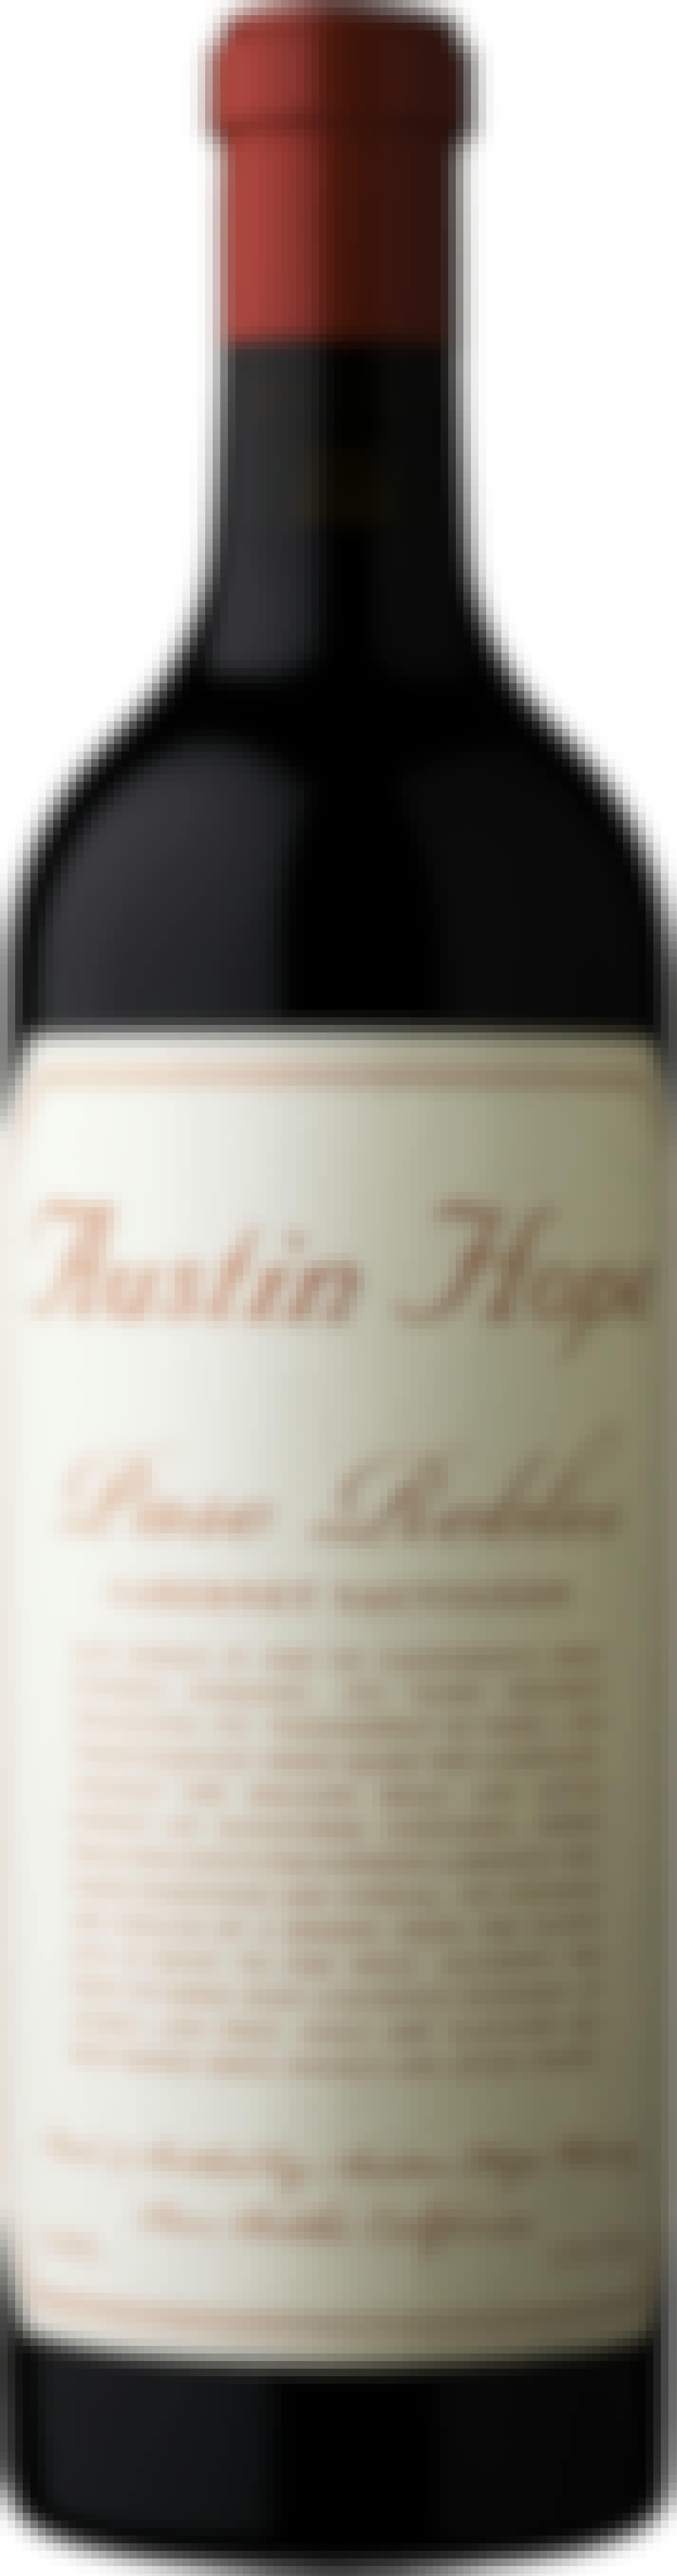 Austin Hope Cabernet Sauvignon 2015 1.5L